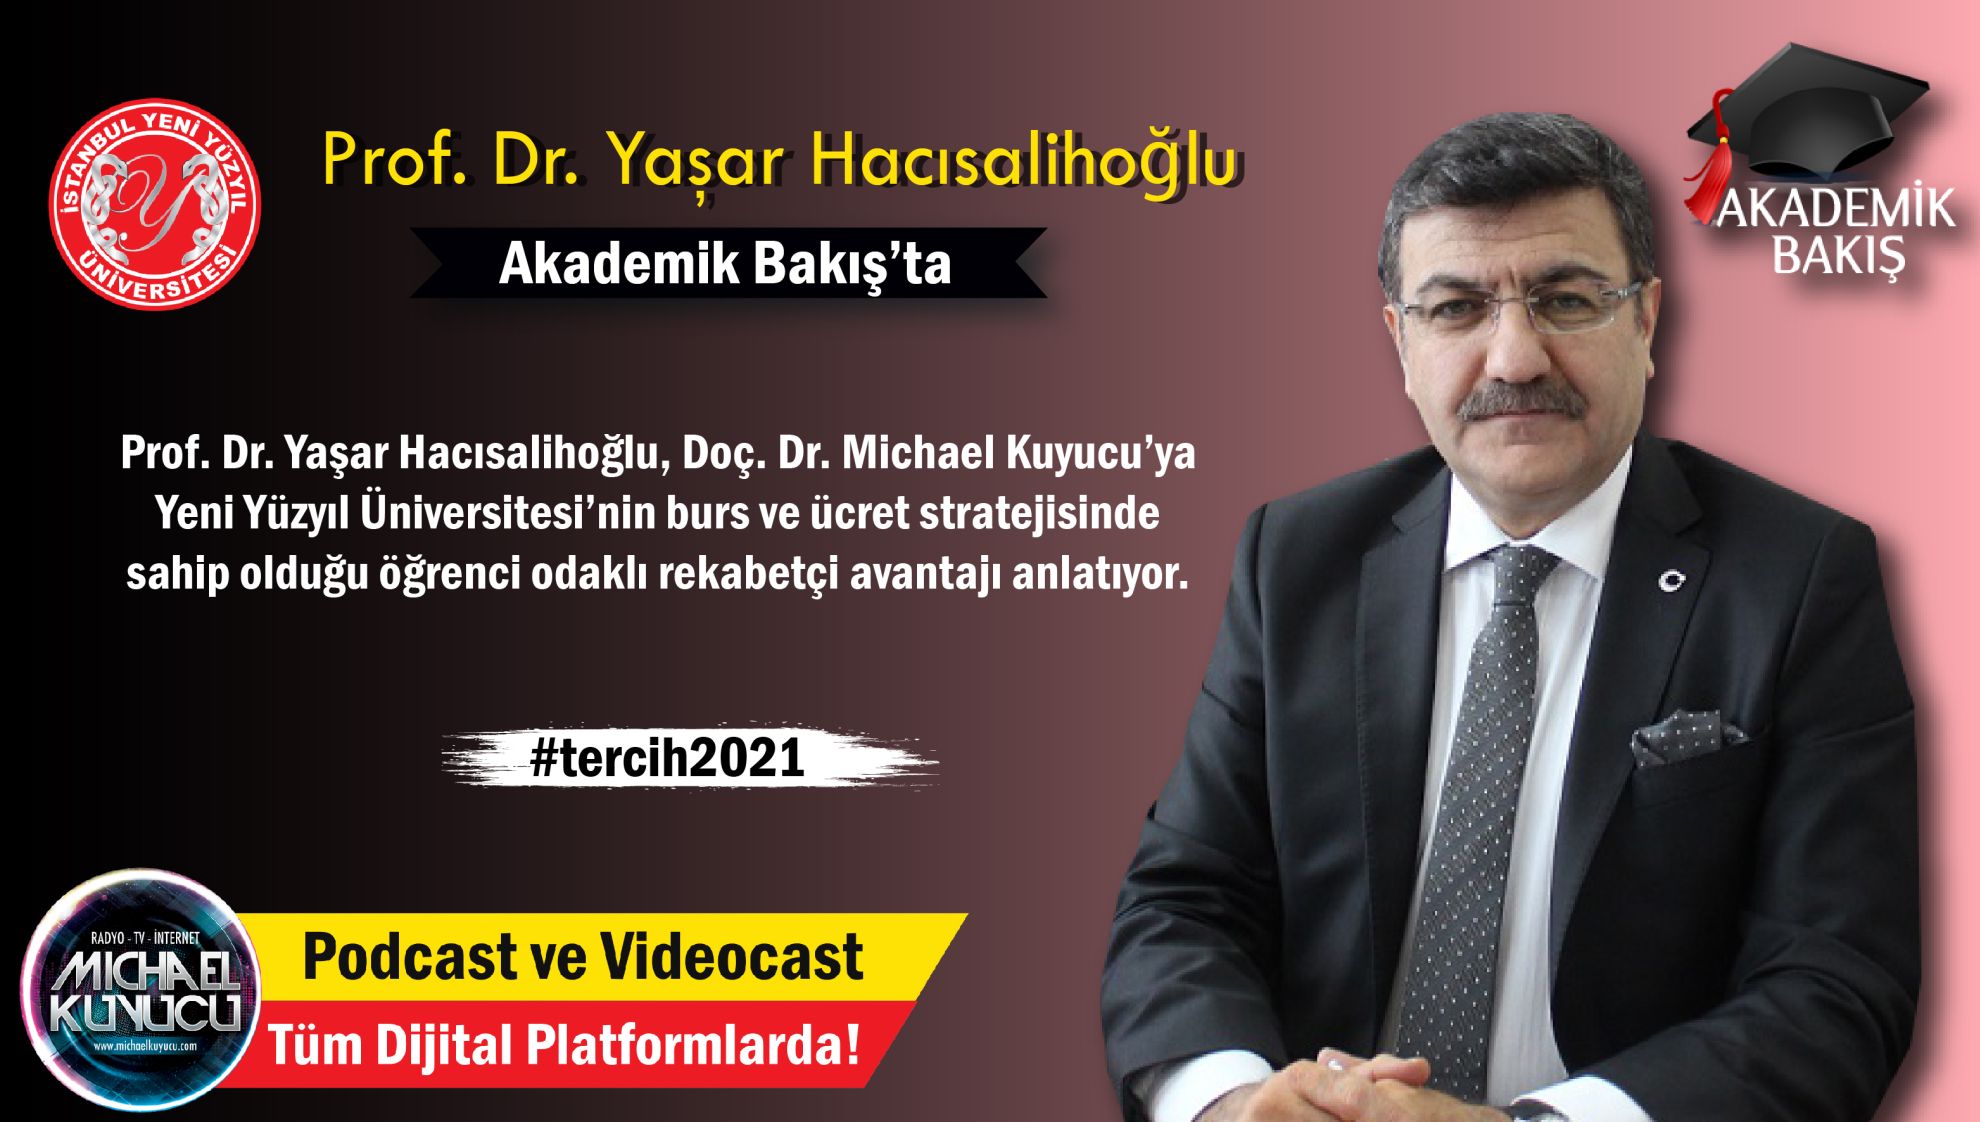 Prof. Dr. Yaşar Hacısalihoğlu: Üç Tane Yurtla Anlaşma Yaptık